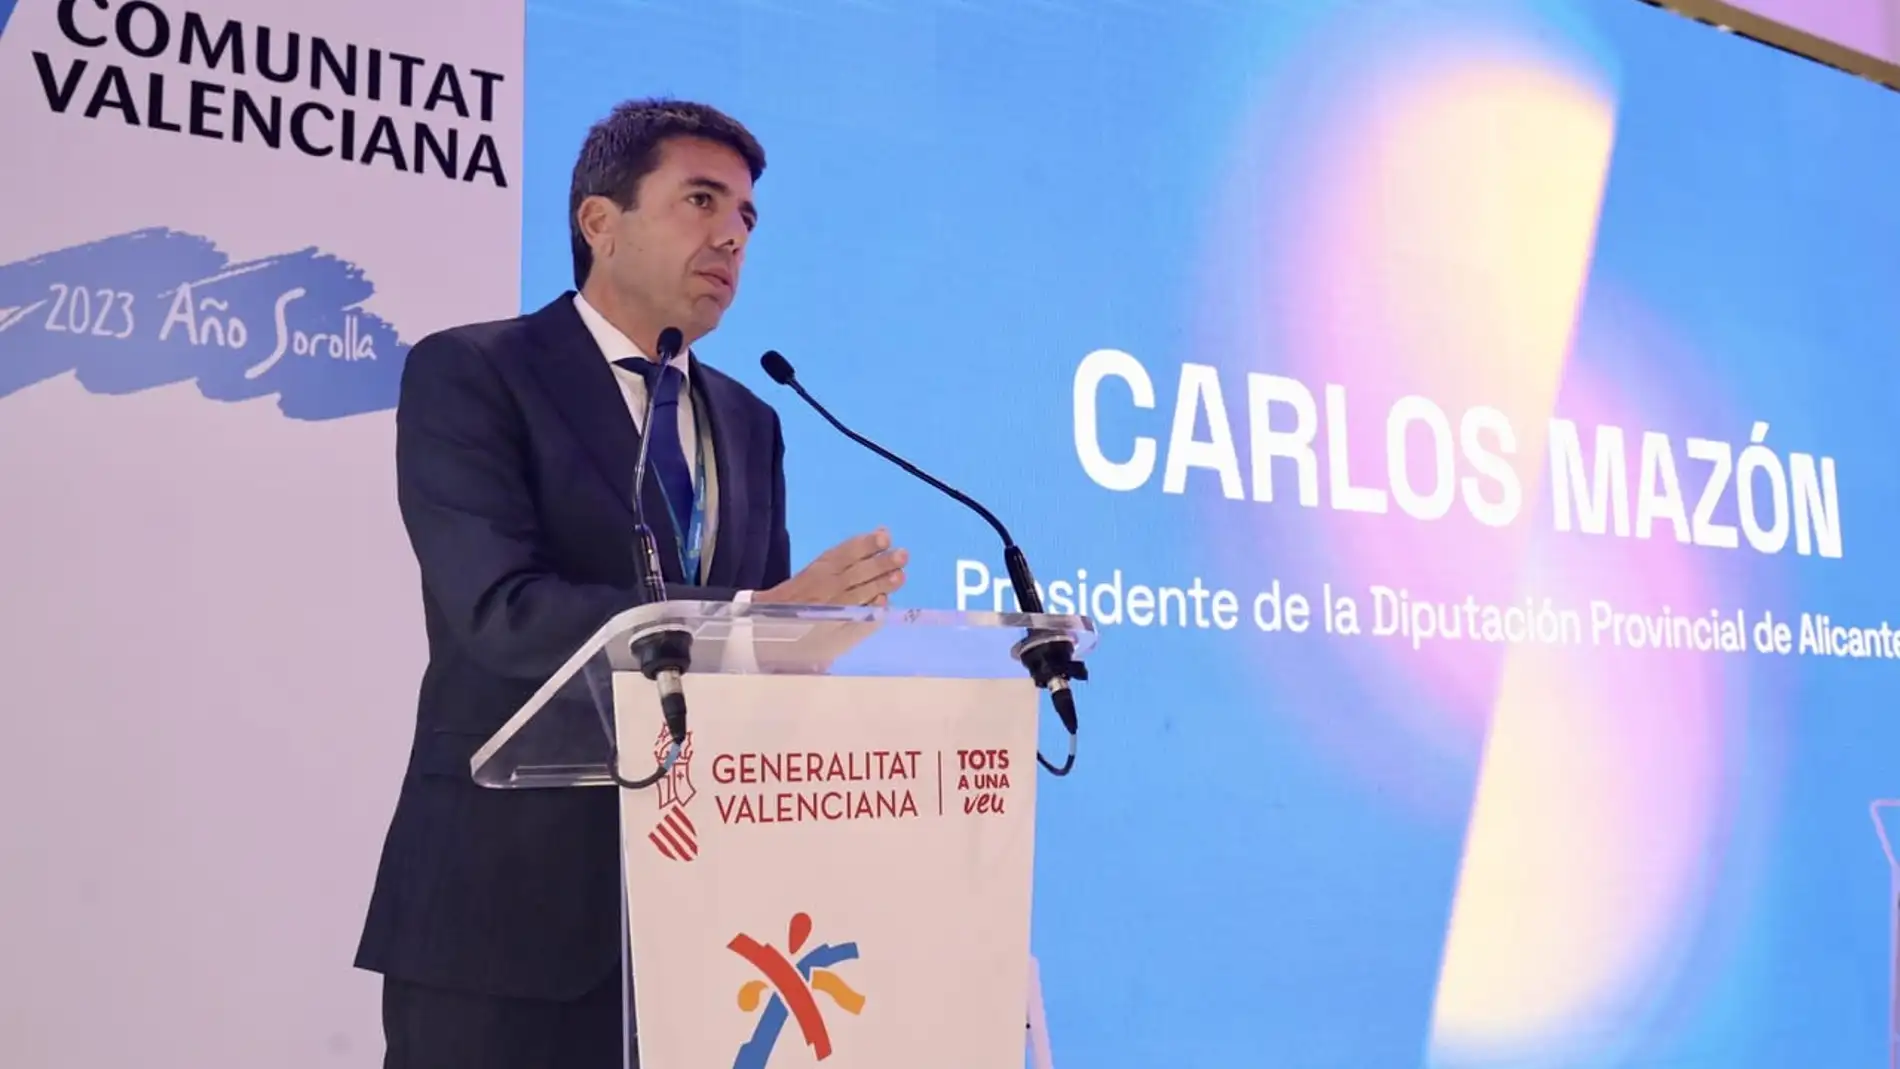 Carlos Mazón presidente de la Diputación de Alicante